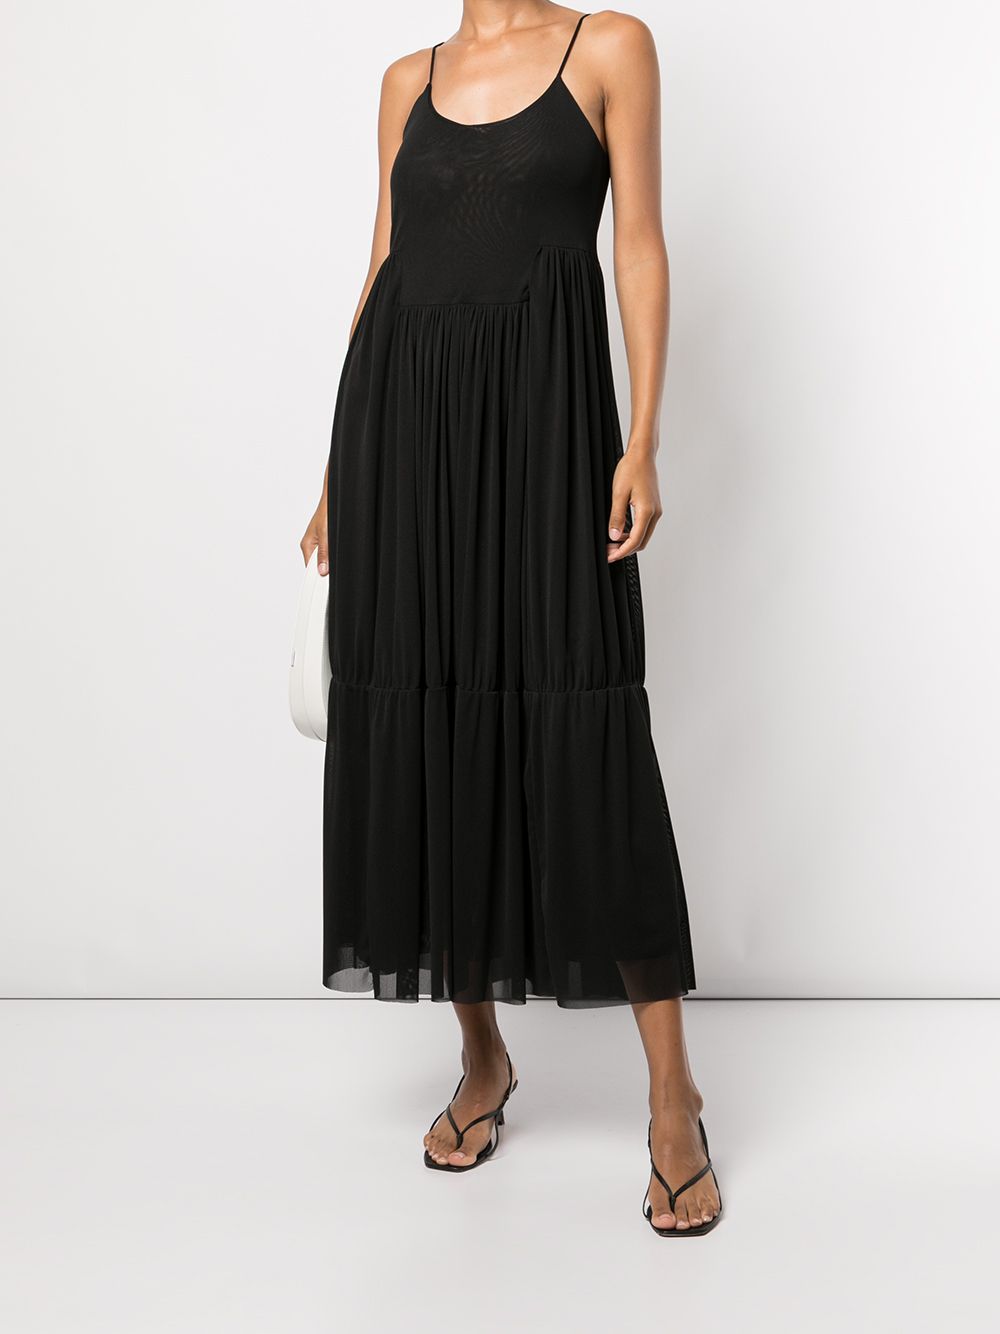 Полупрозрачное черное платье  идеальный образ для летних вечеров